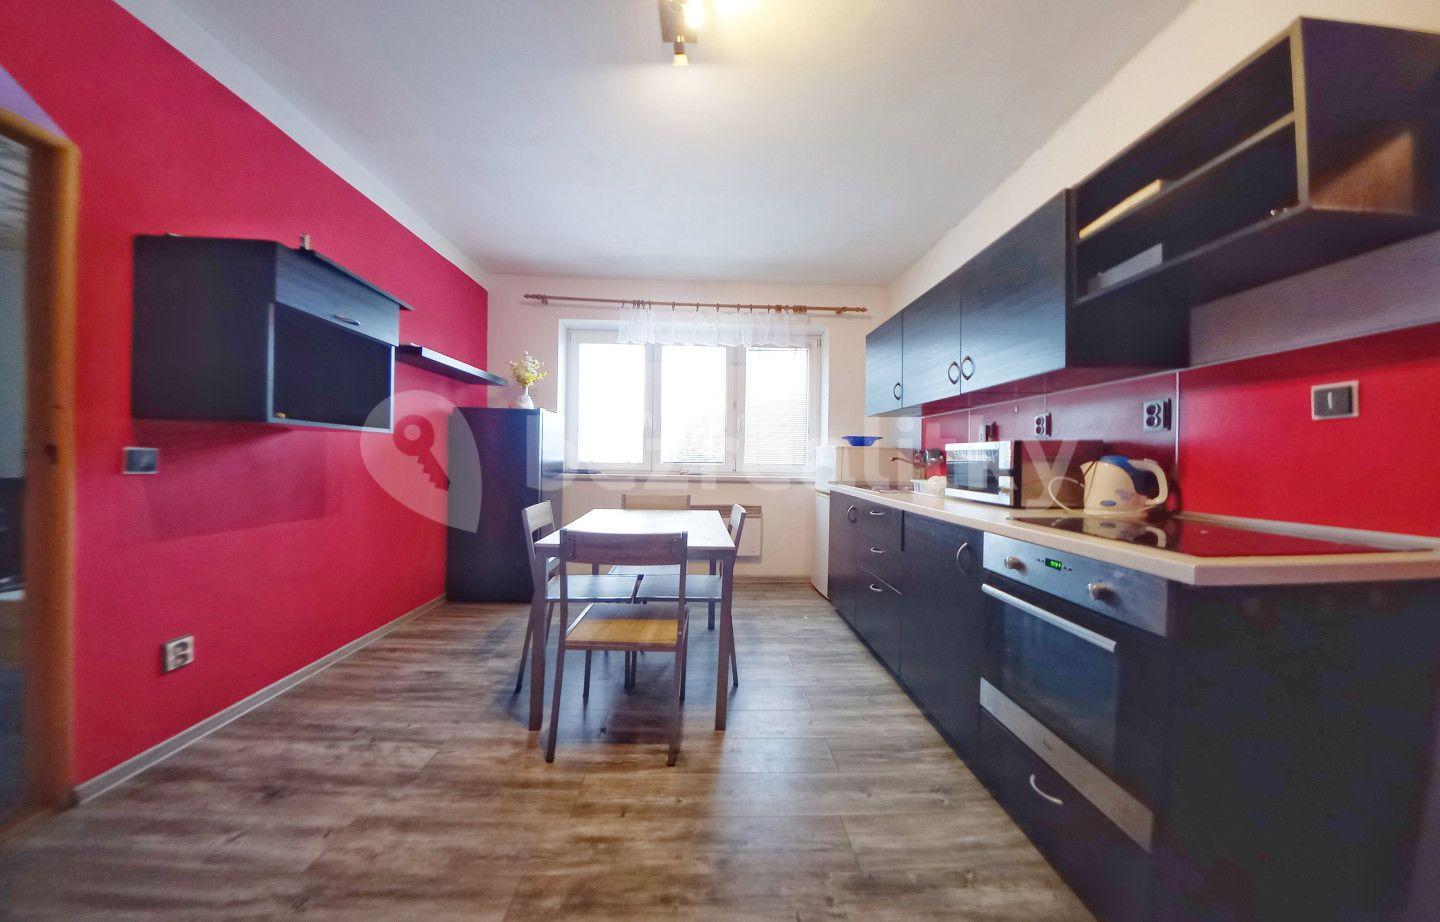 1 bedroom with open-plan kitchen flat for sale, 42 m², Masarykova, Kamenice nad Lipou, Vysočina Region